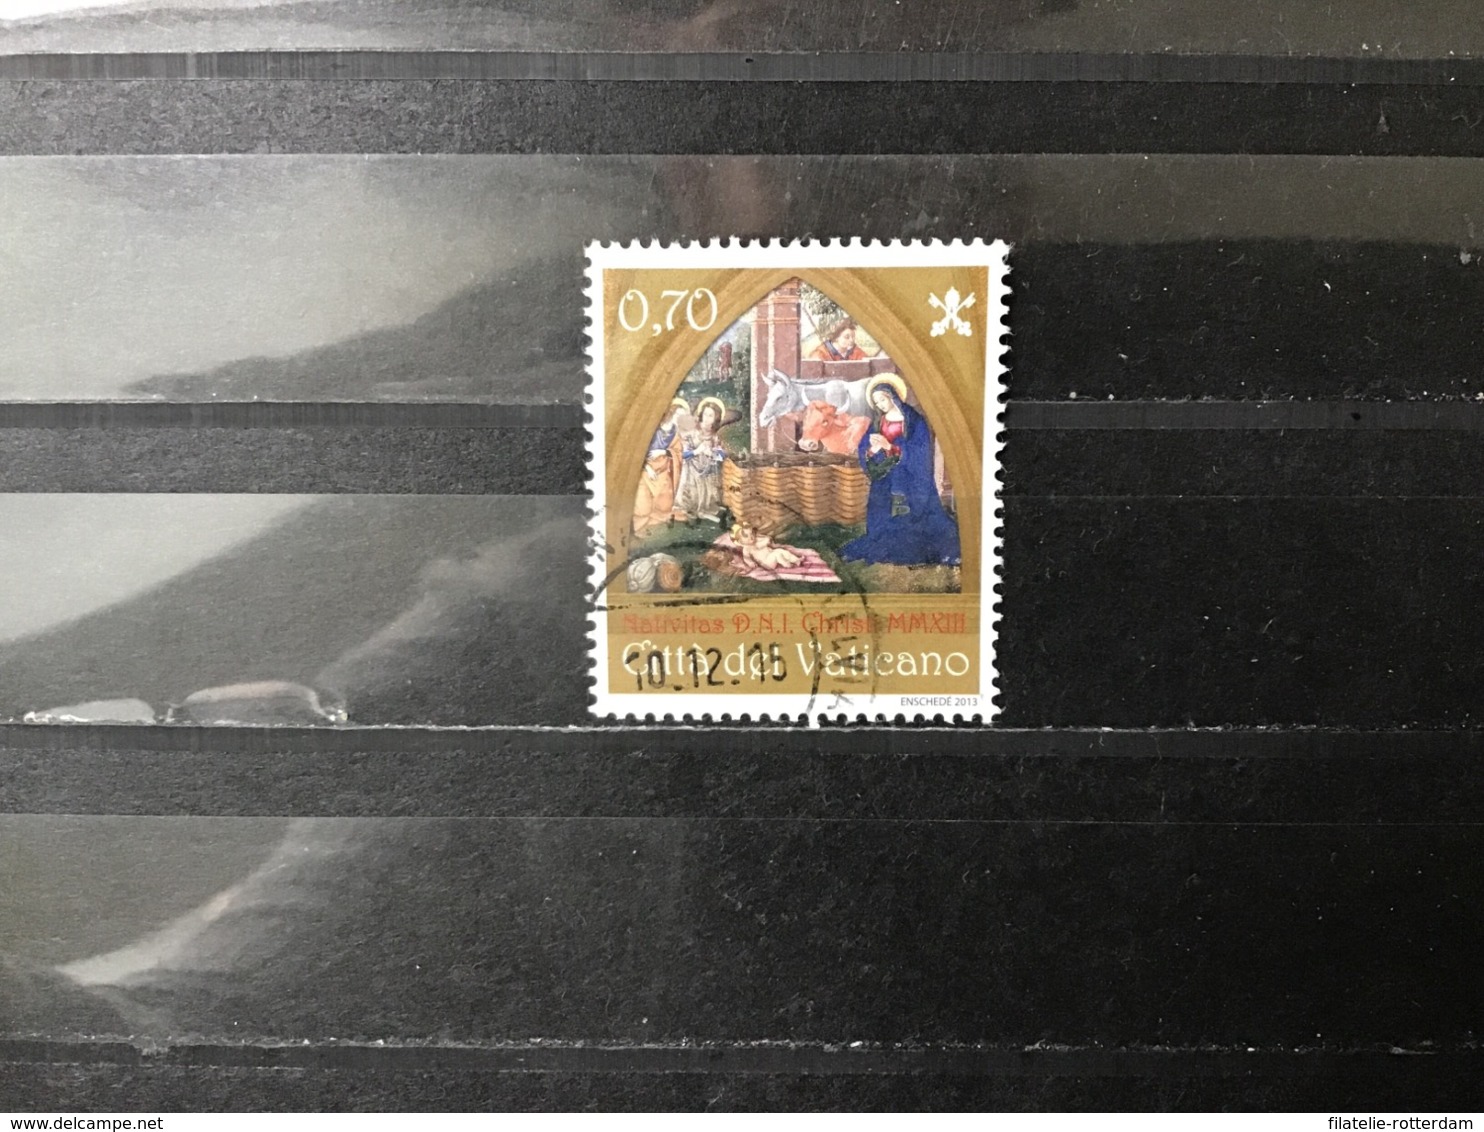 Vaticaanstad / Vatican City - Kerstmis (0.70) 2013 - Used Stamps